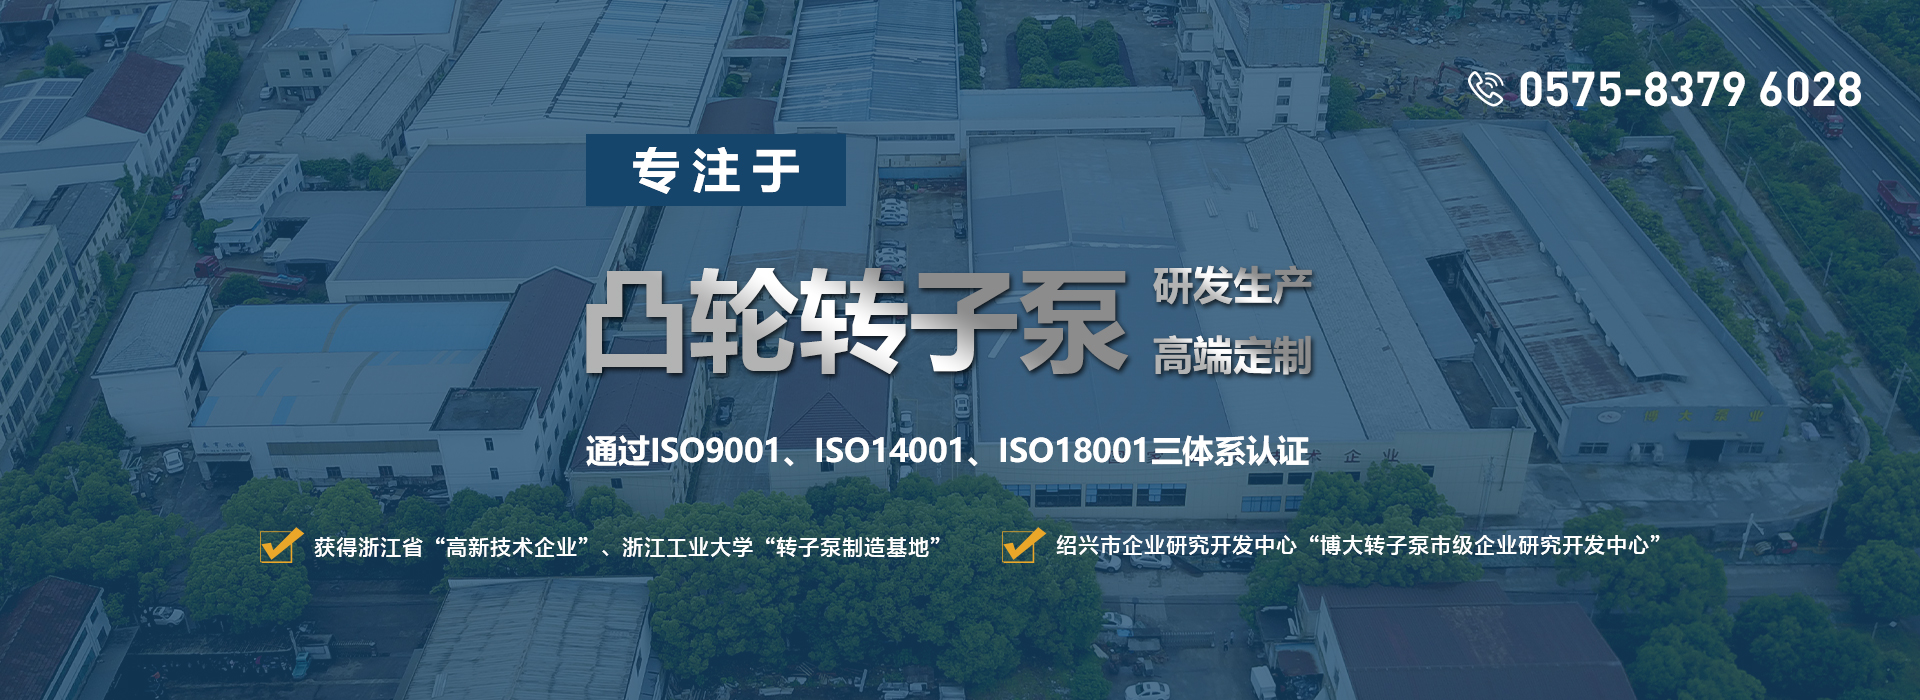 网站首页-浙江博大泵业有限公司